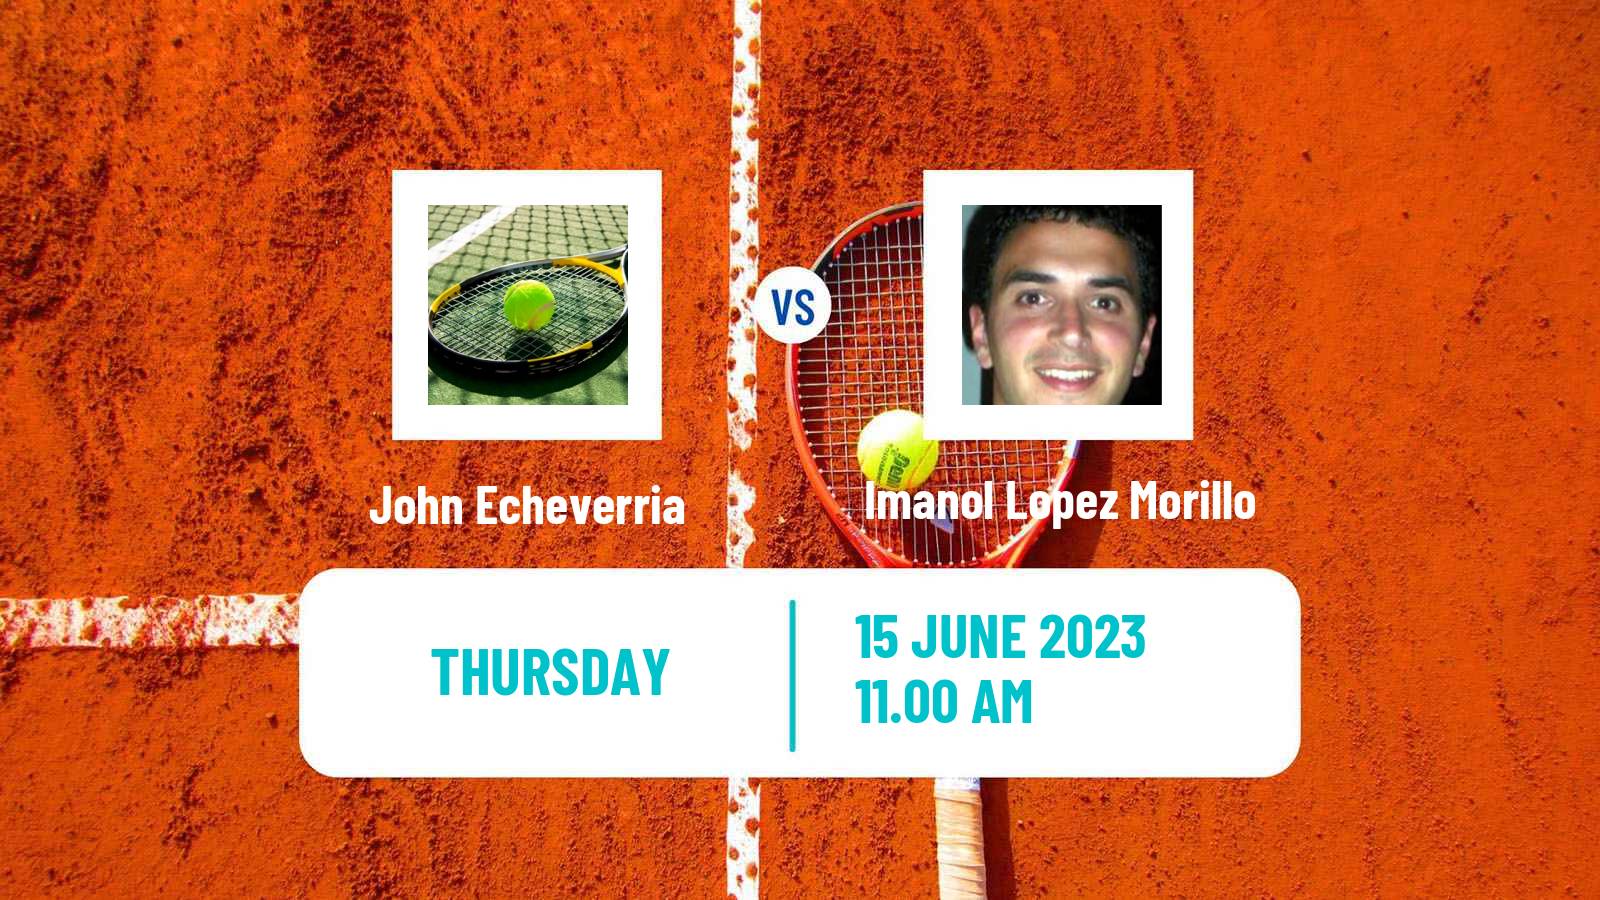 Tennis ITF M25 Martos Men John Echeverria - Imanol Lopez Morillo